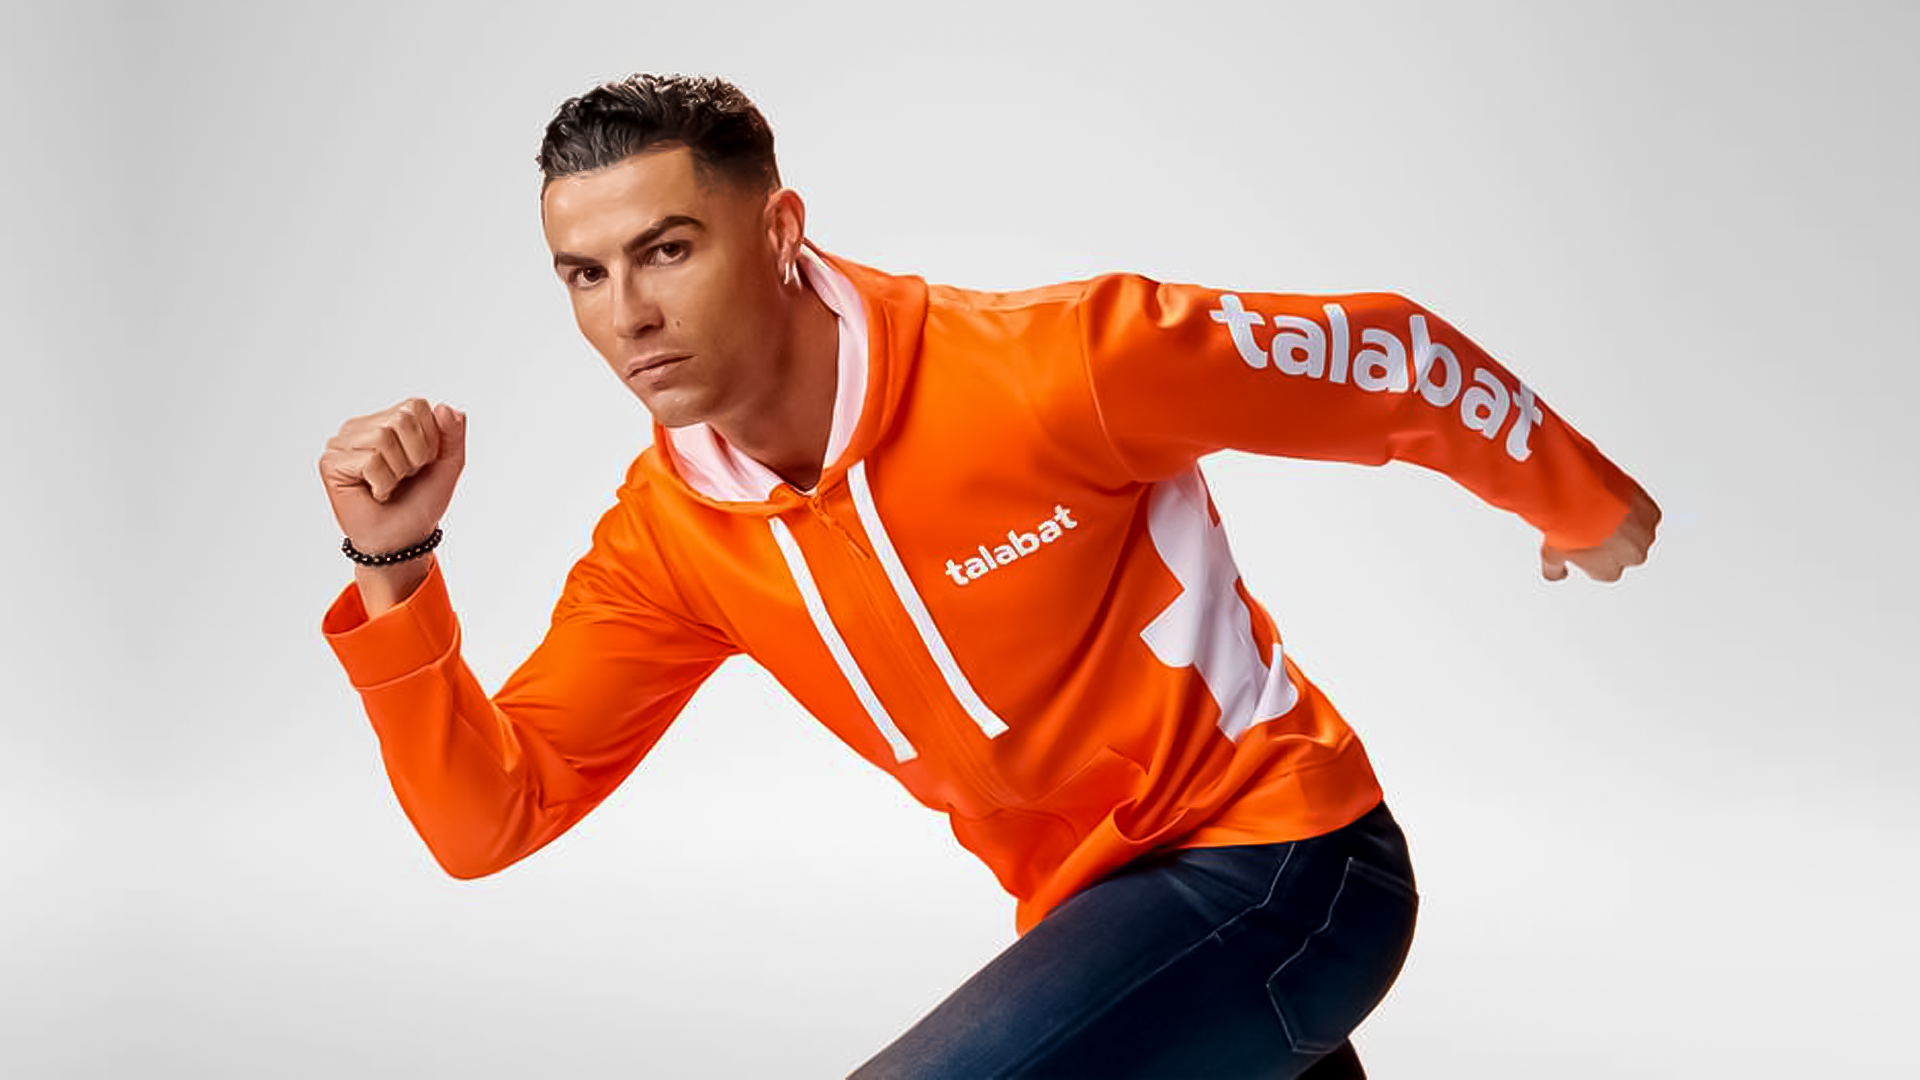 Talabat signs Cristiano Ronaldo as its official brand ambassador